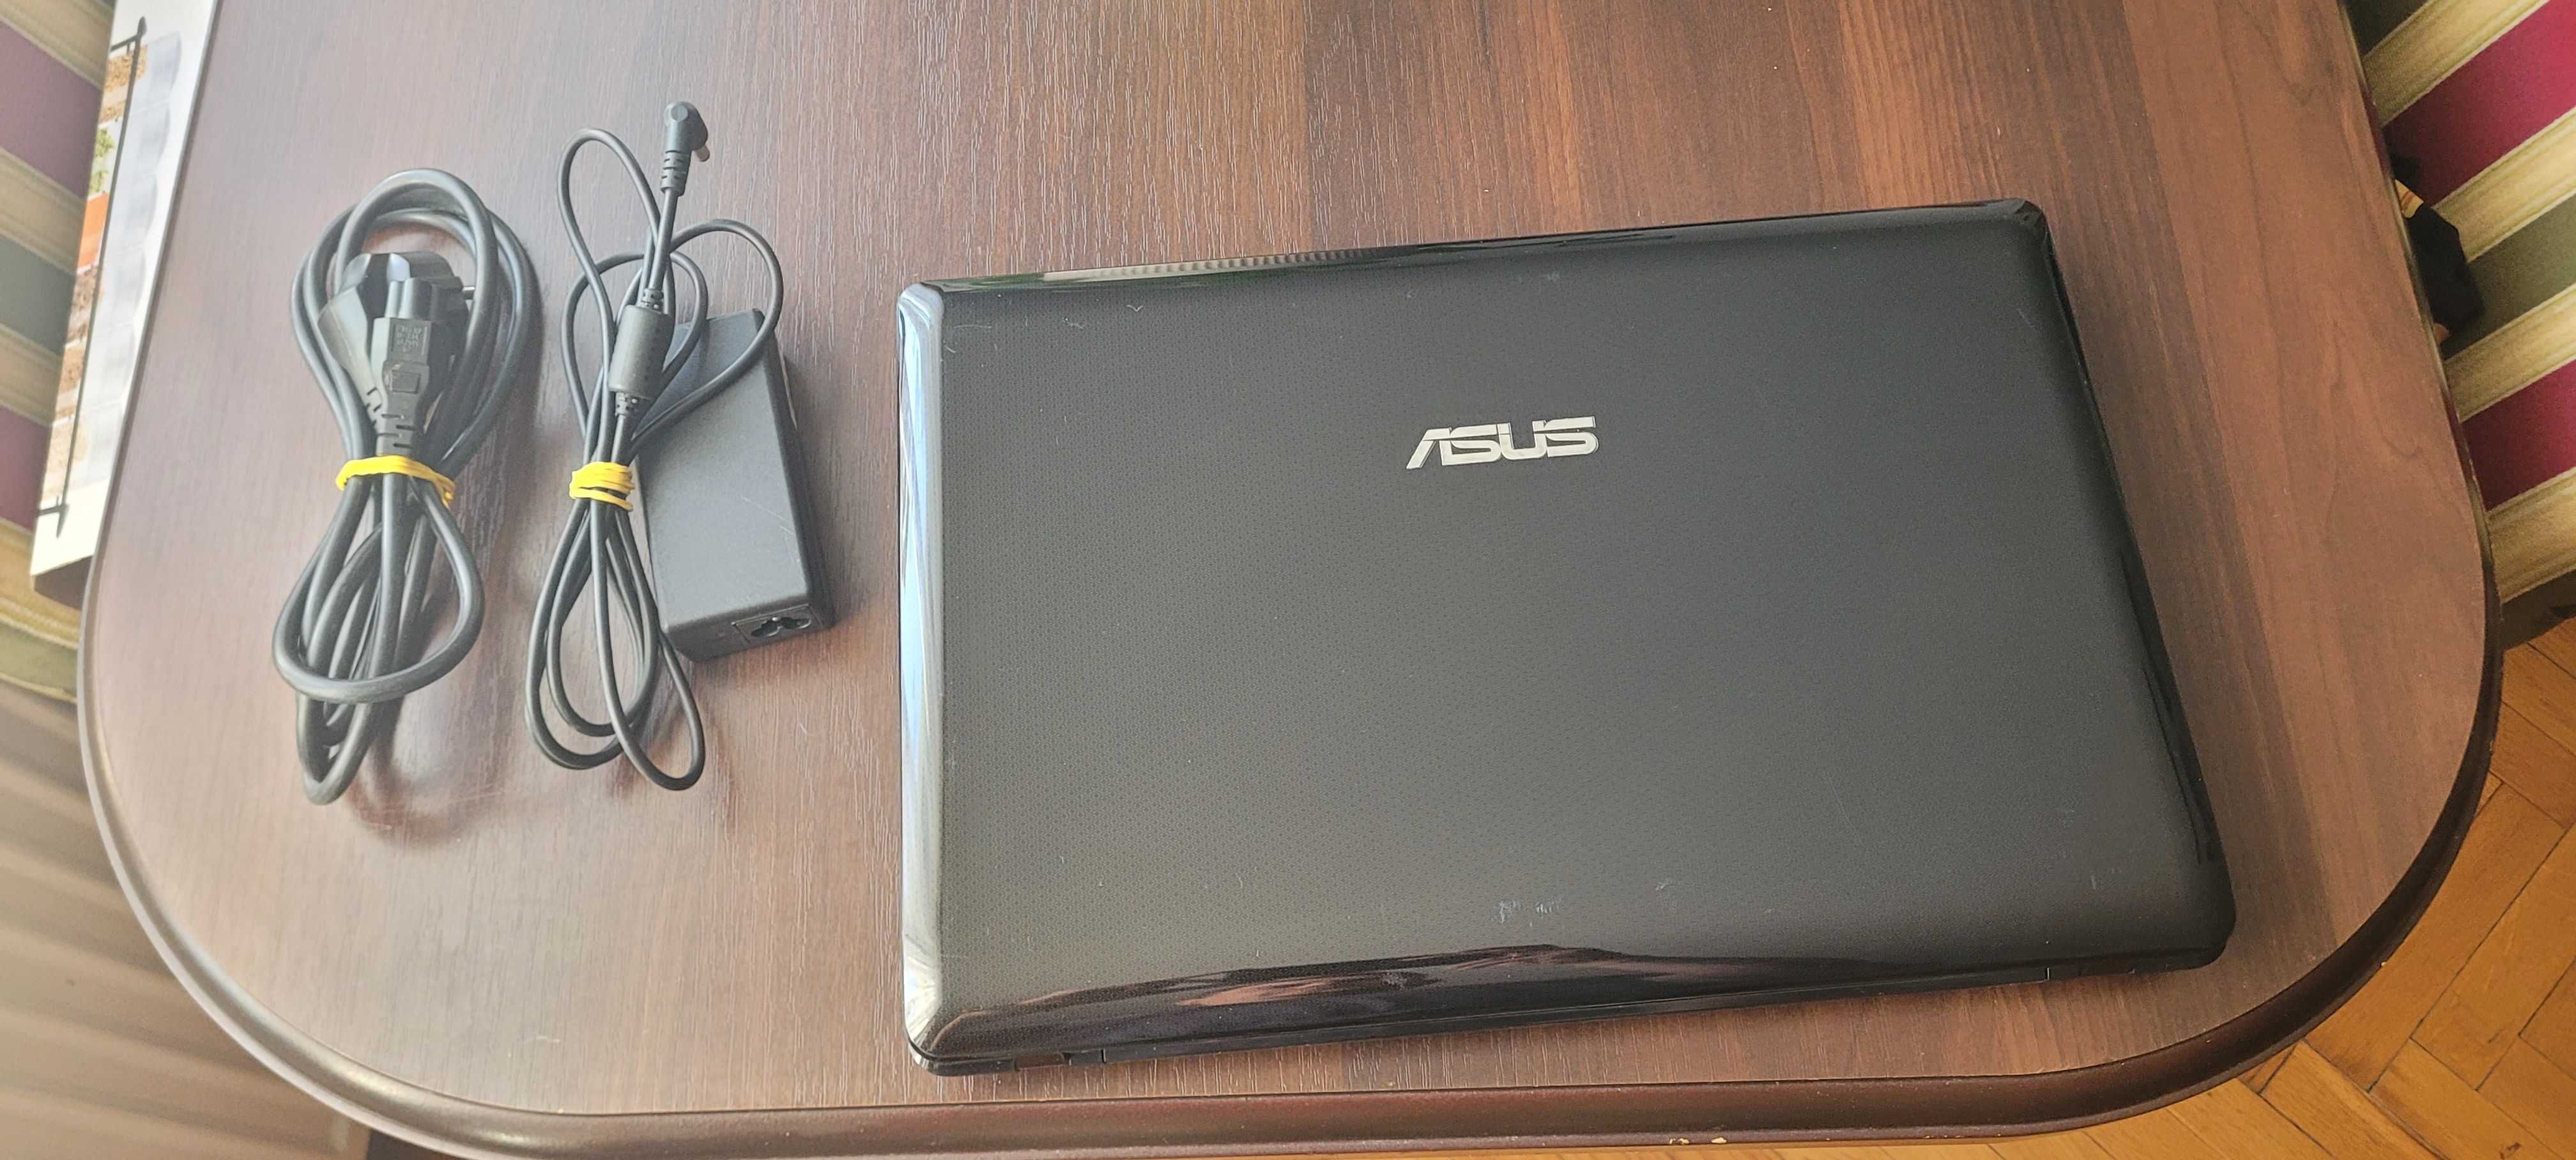 Laptop ASUS X52J i3 4Gb RAM Intel HD 4500